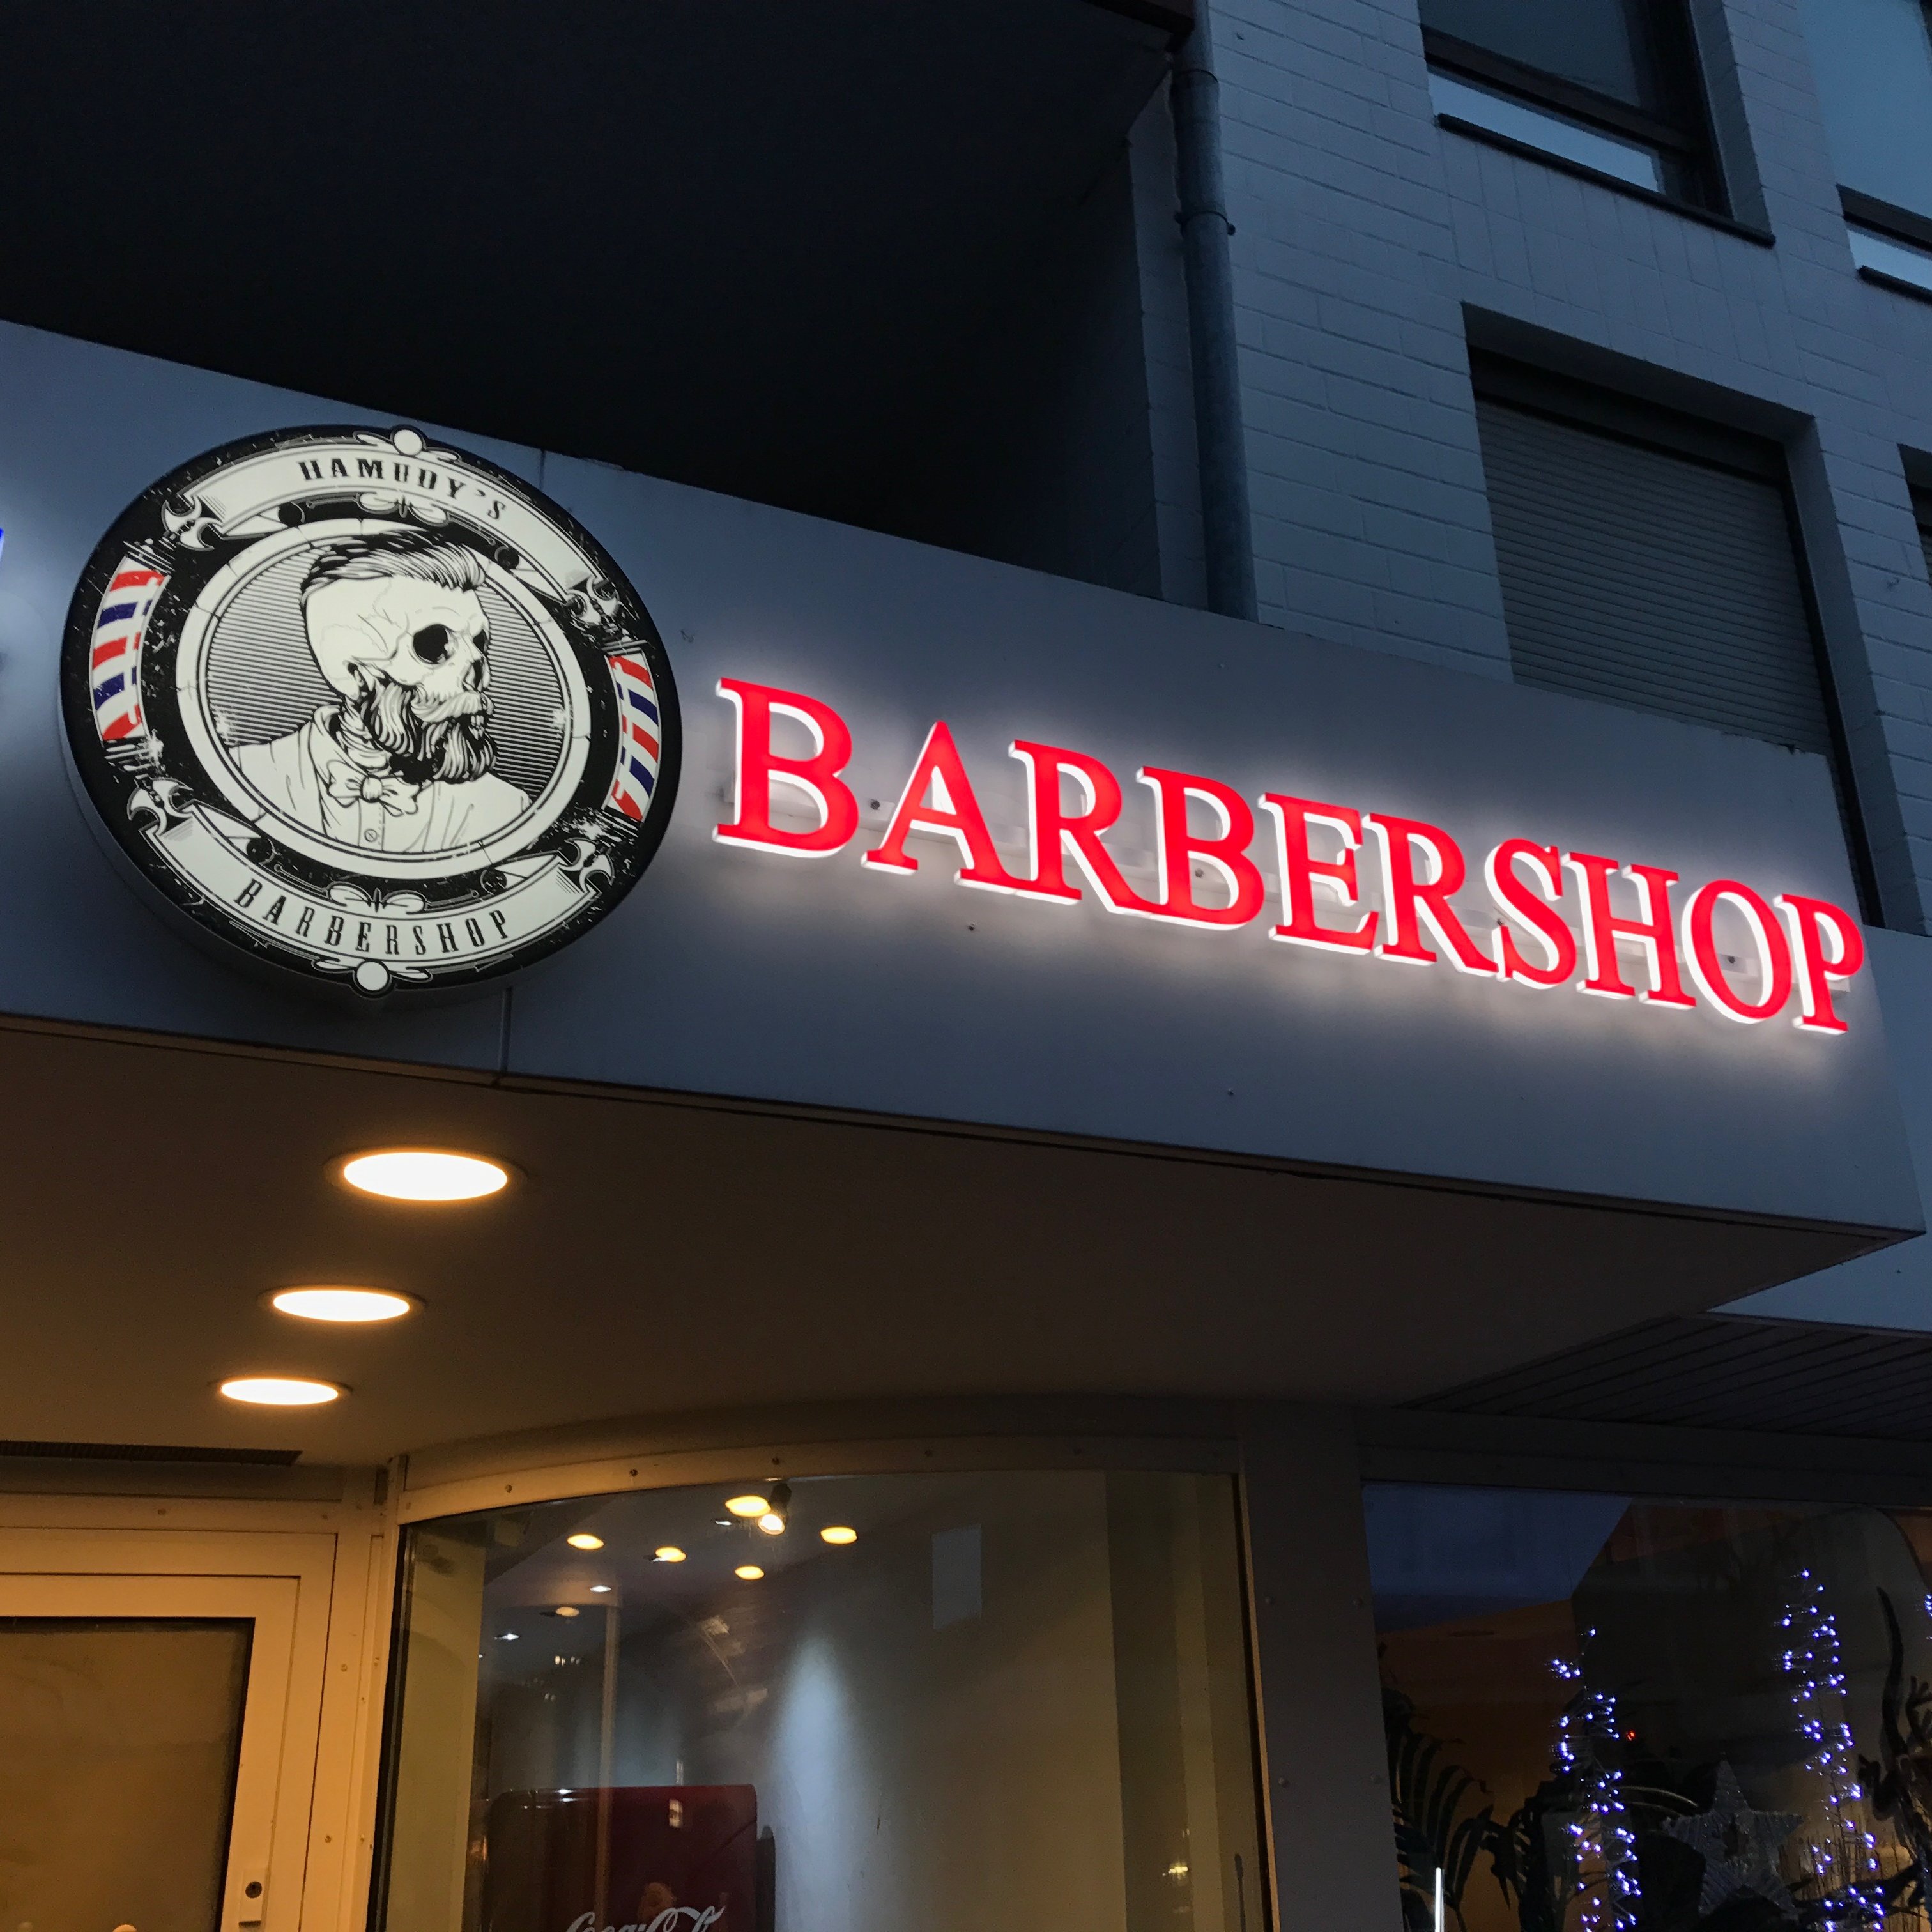 verlichte letters Barbershop rood met wit